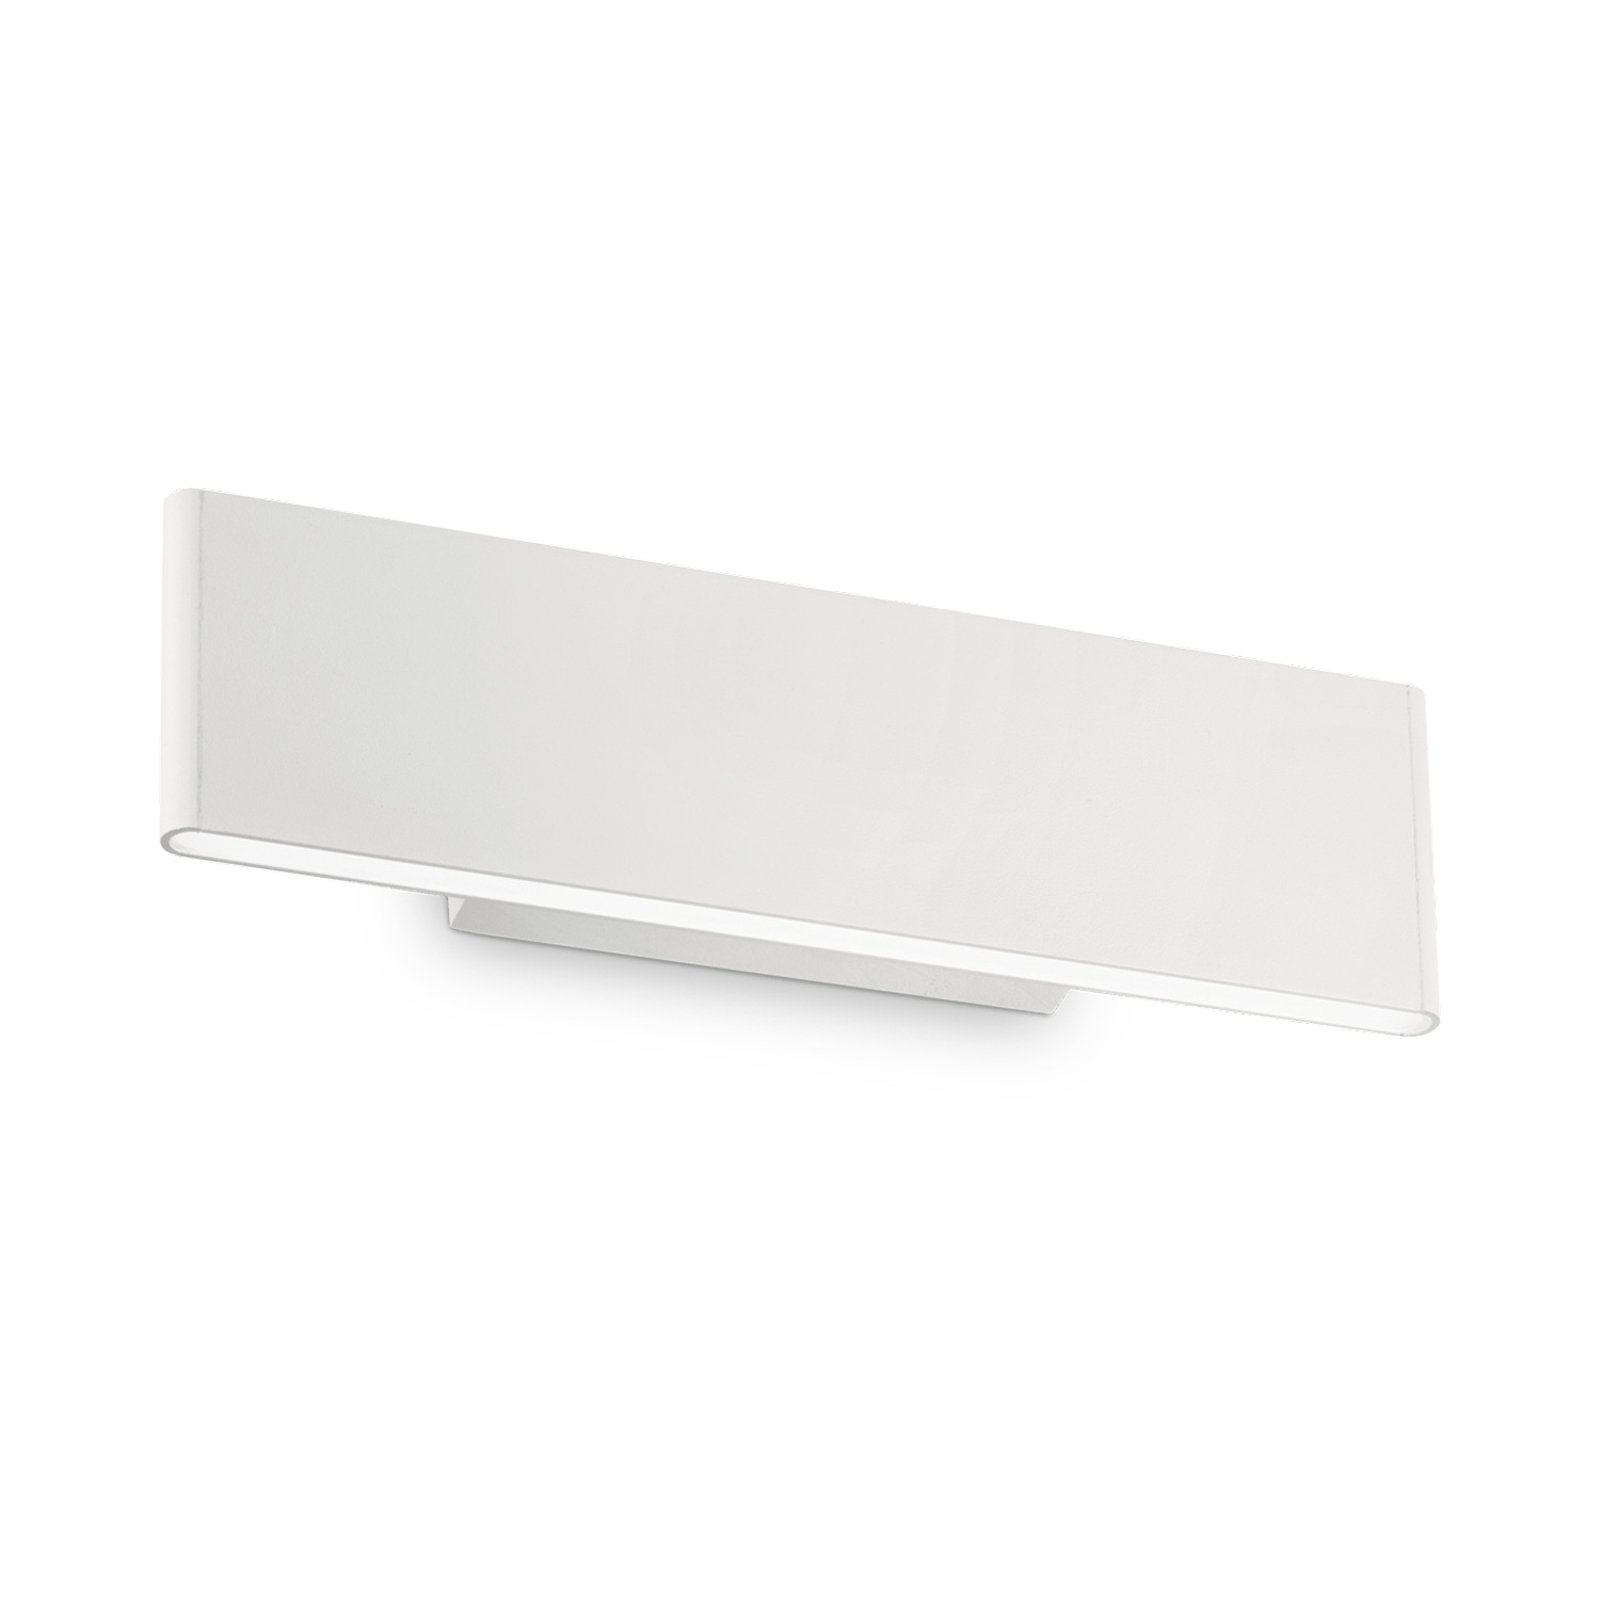 LED-vägglampa Desk vit, ljus uppåt/nedåt